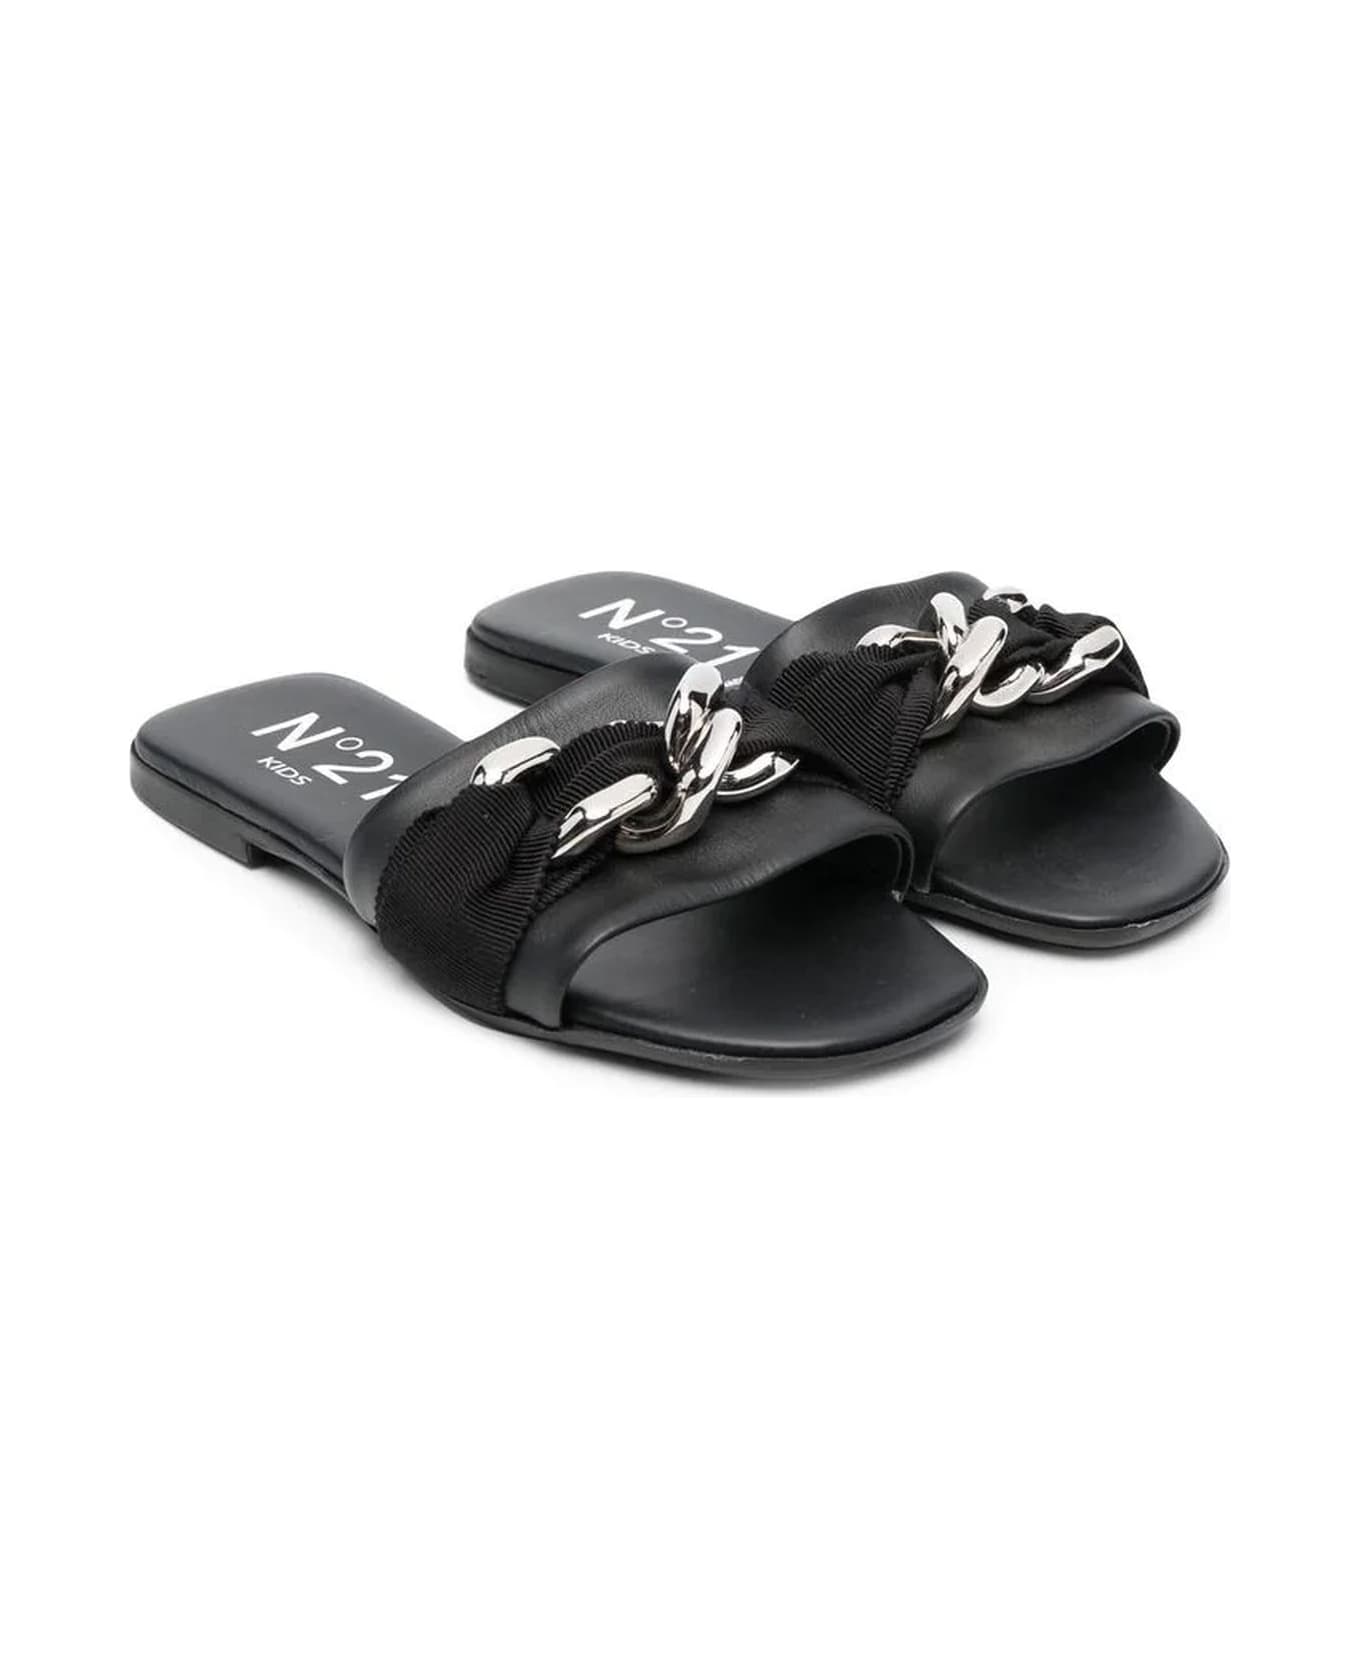 N.21 N°21 Sandals Black - Black シューズ